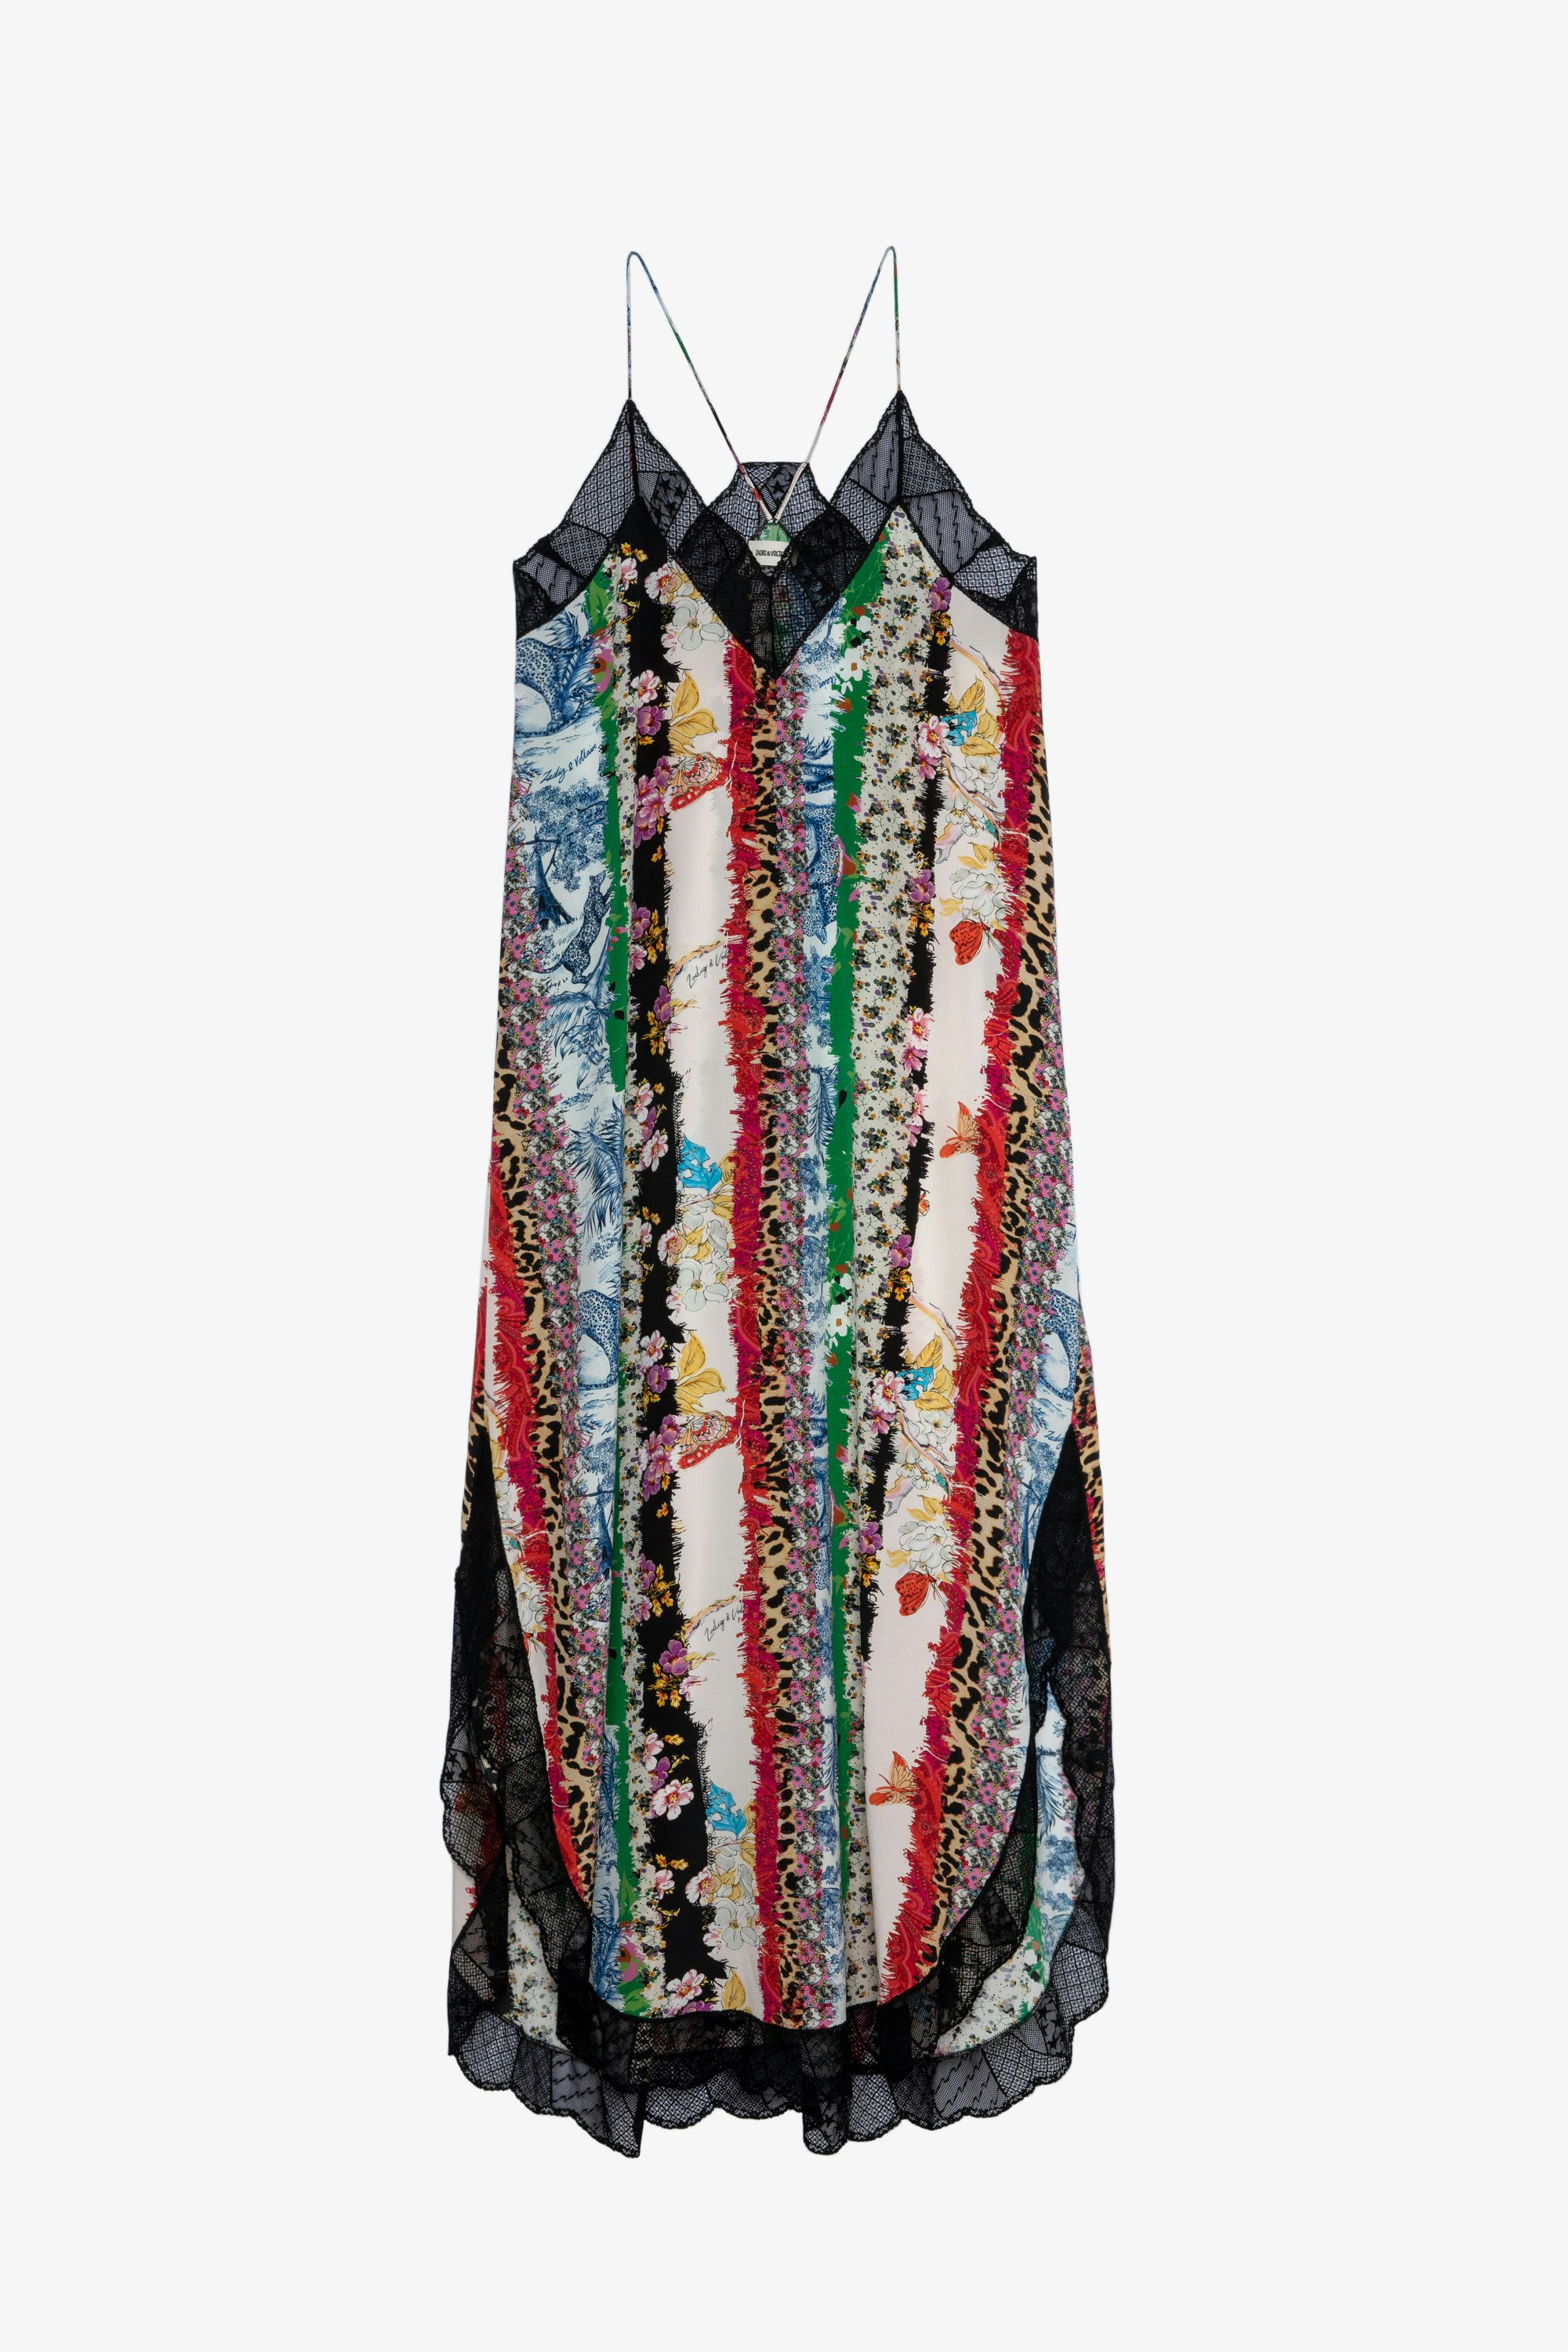 Kleid Ristyl mit verschiedenen Prints 25 Jahre Langes Damenkleid mit schmalen Trägern mit Drucken verziert